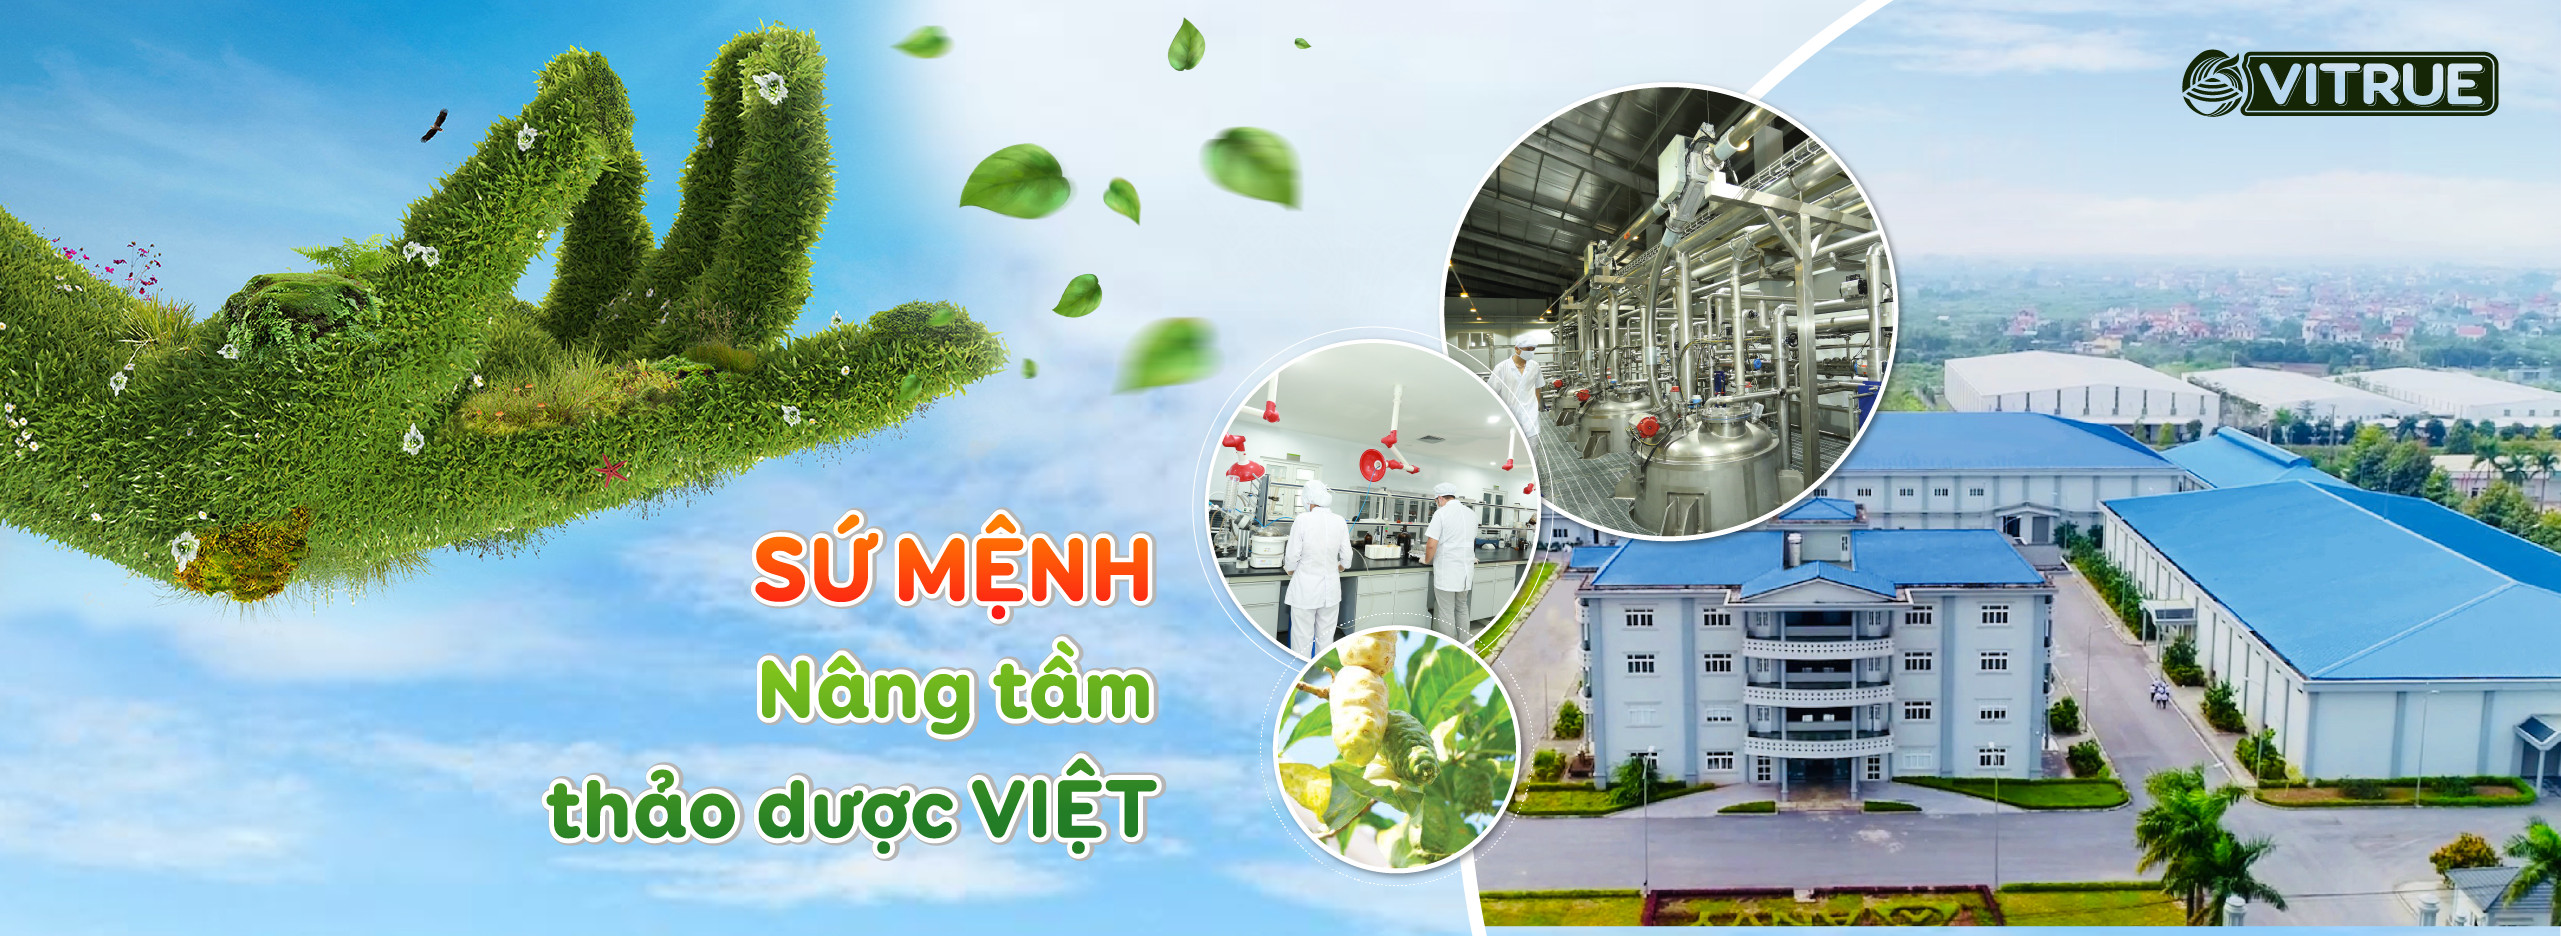 Sứ mệnh nâng tầm thảo dược Việt của VITRUE